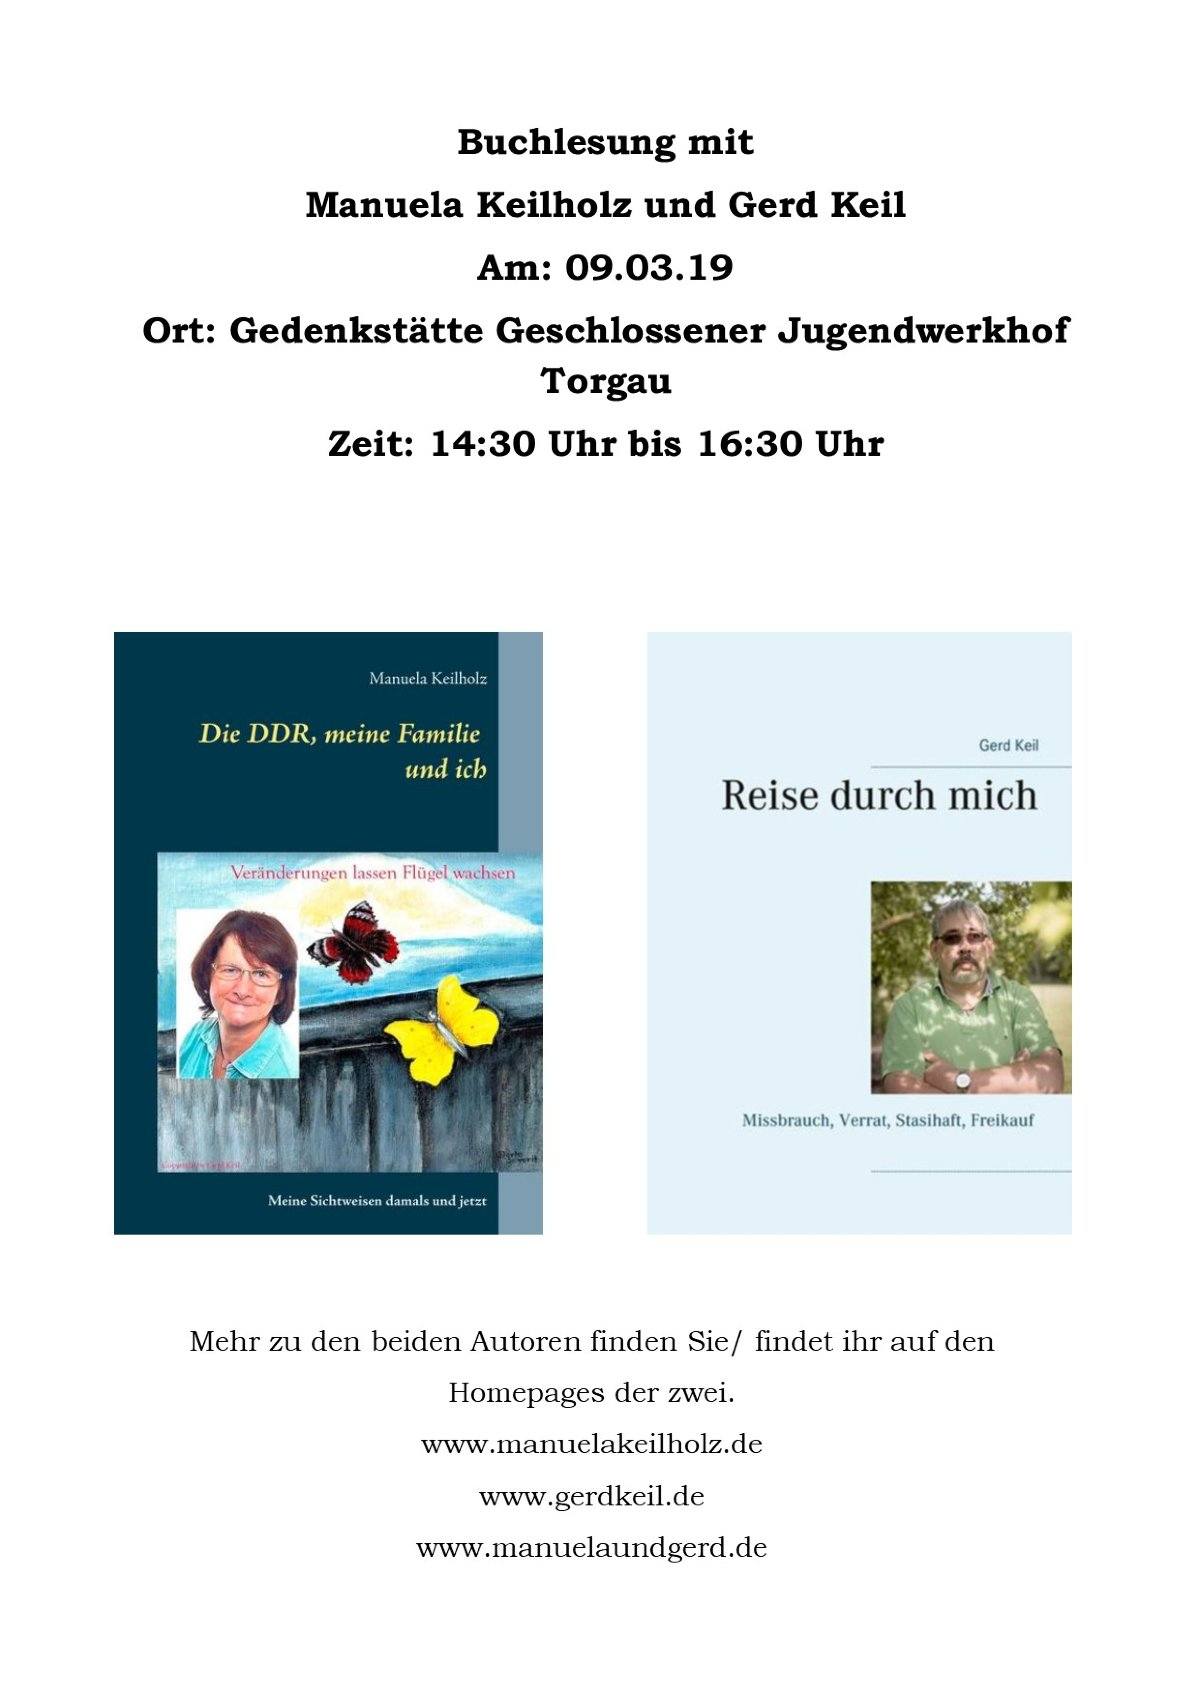 Buchlesung mit Manuela Keilholz und Gerd Keil